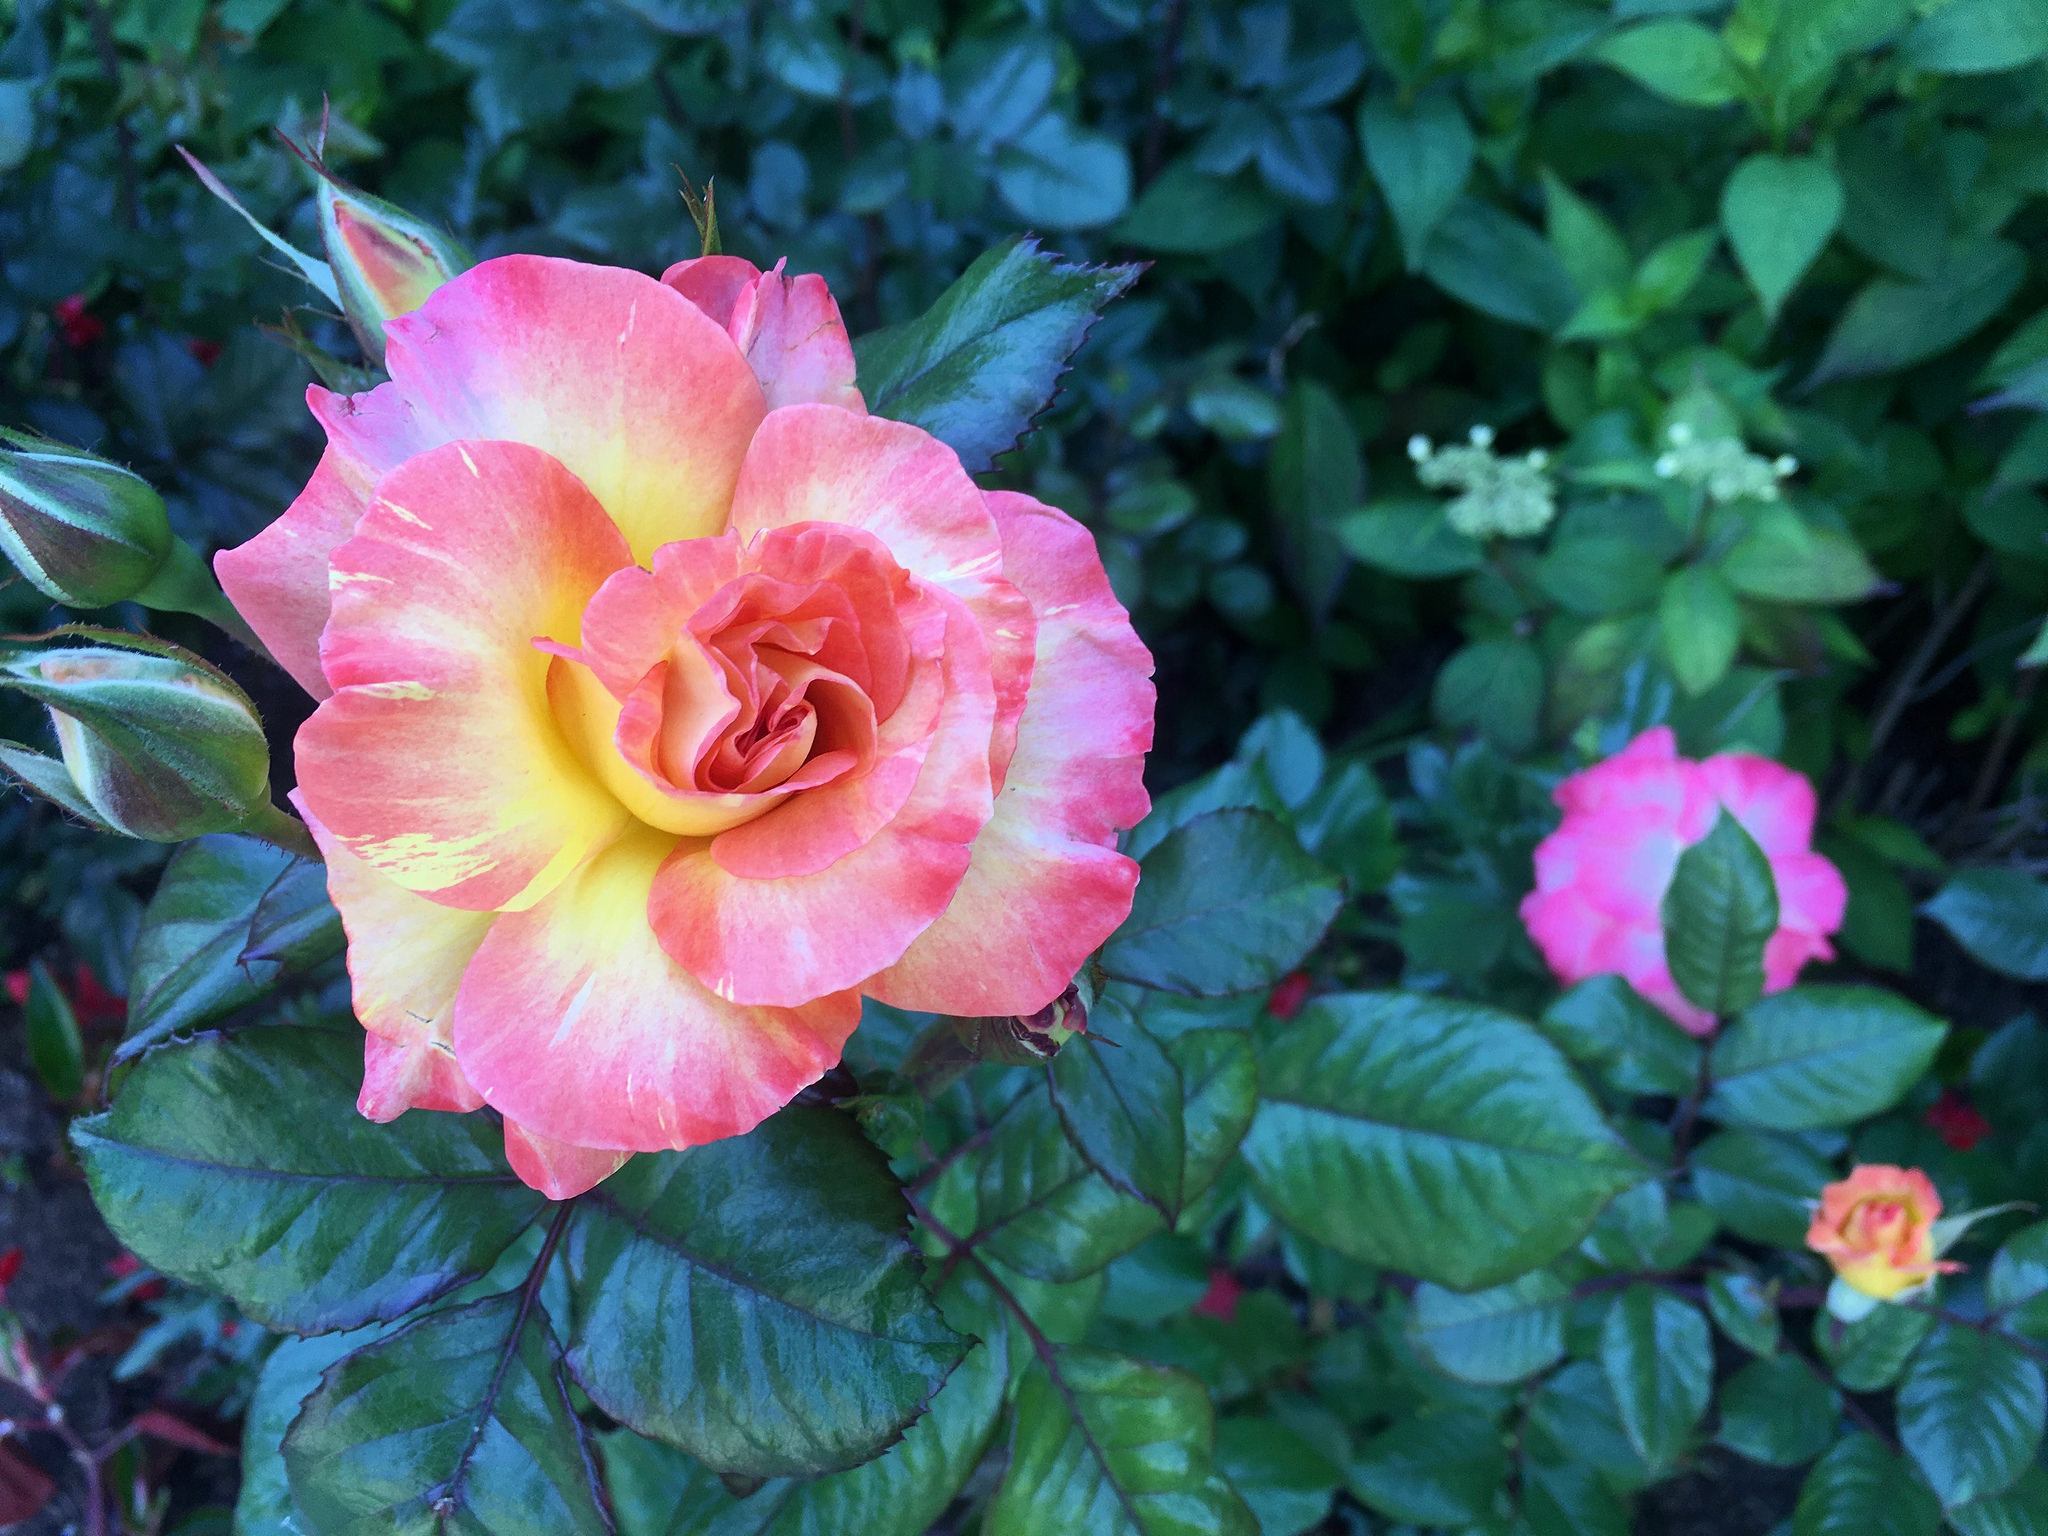 A domestic rose (Flickr: Jeremy Yoder)